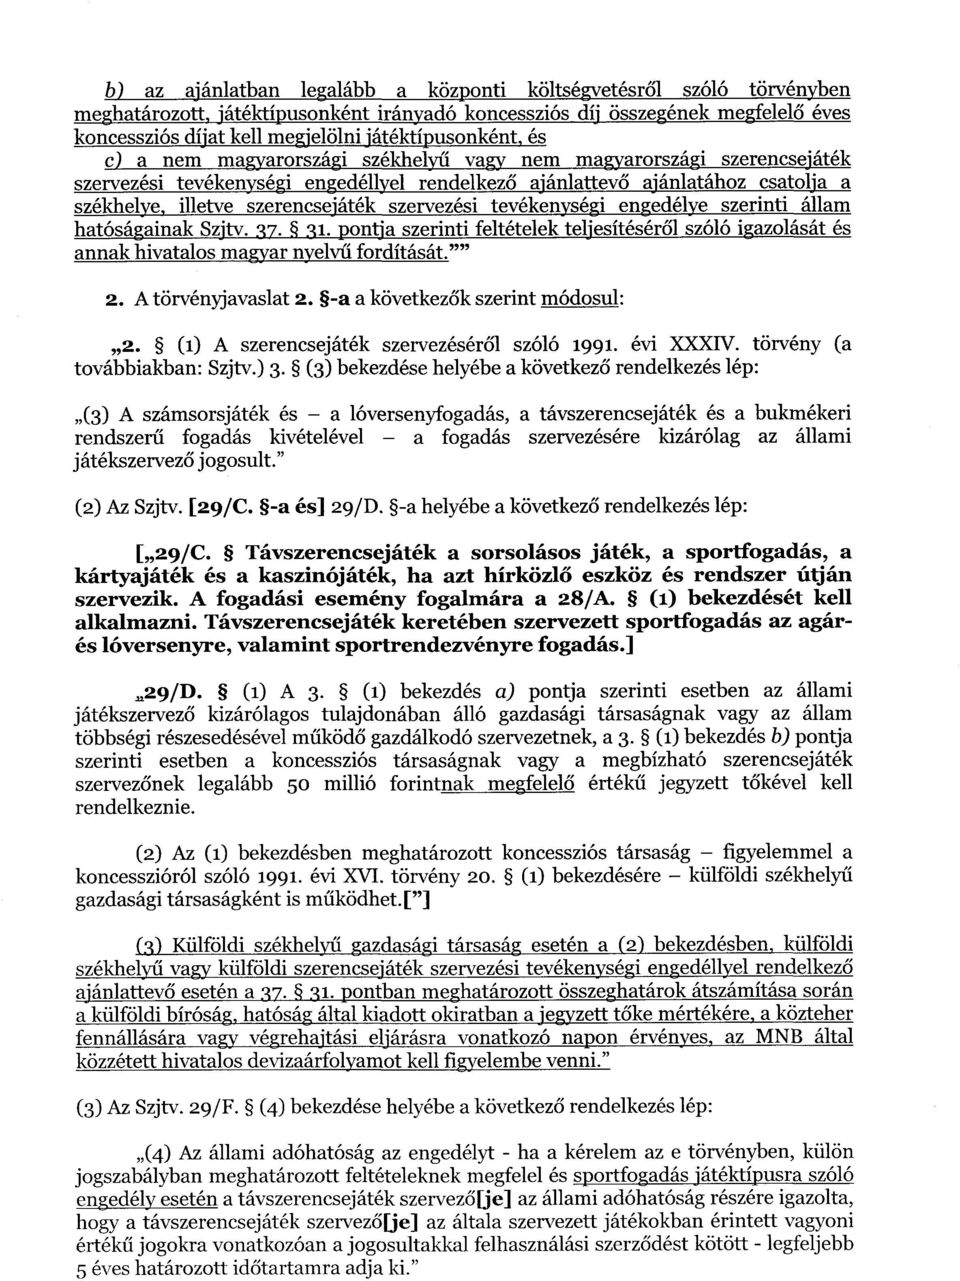 szerencsejáték szervezési tevékenységi engedélye szerinti állam hatóságainak Szjtv. 37. 31. pontja szerinti feltételek teljesítésér ől szóló igazolását és annak hivatalos magyar nyelvű fordítását." 2.